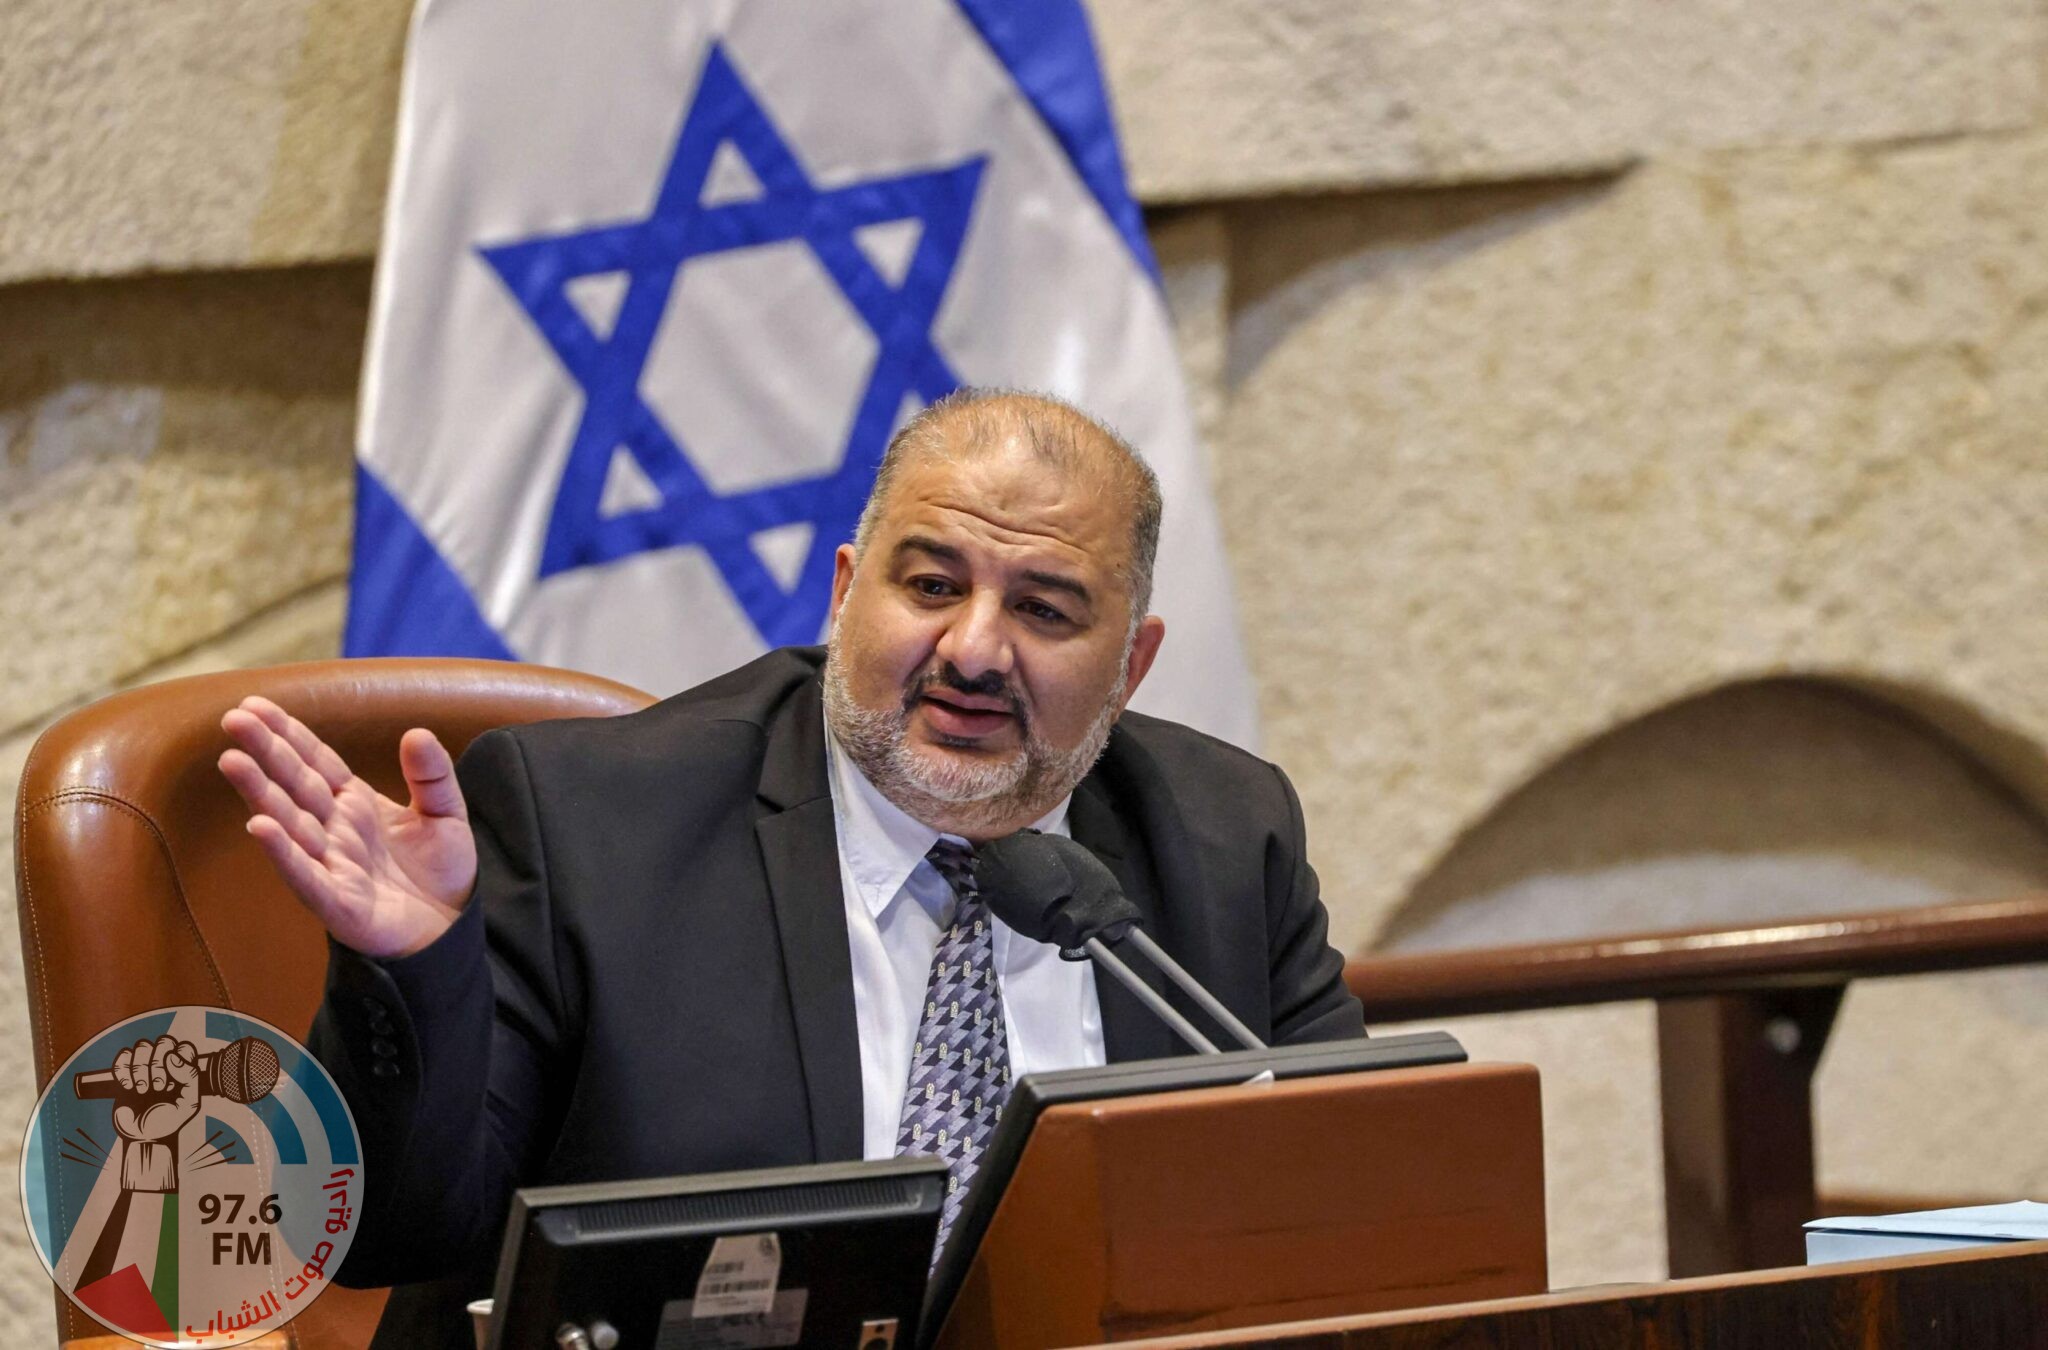 ما هو شرط منصور عباس للانضمام إلى حكومة نتنياهو؟